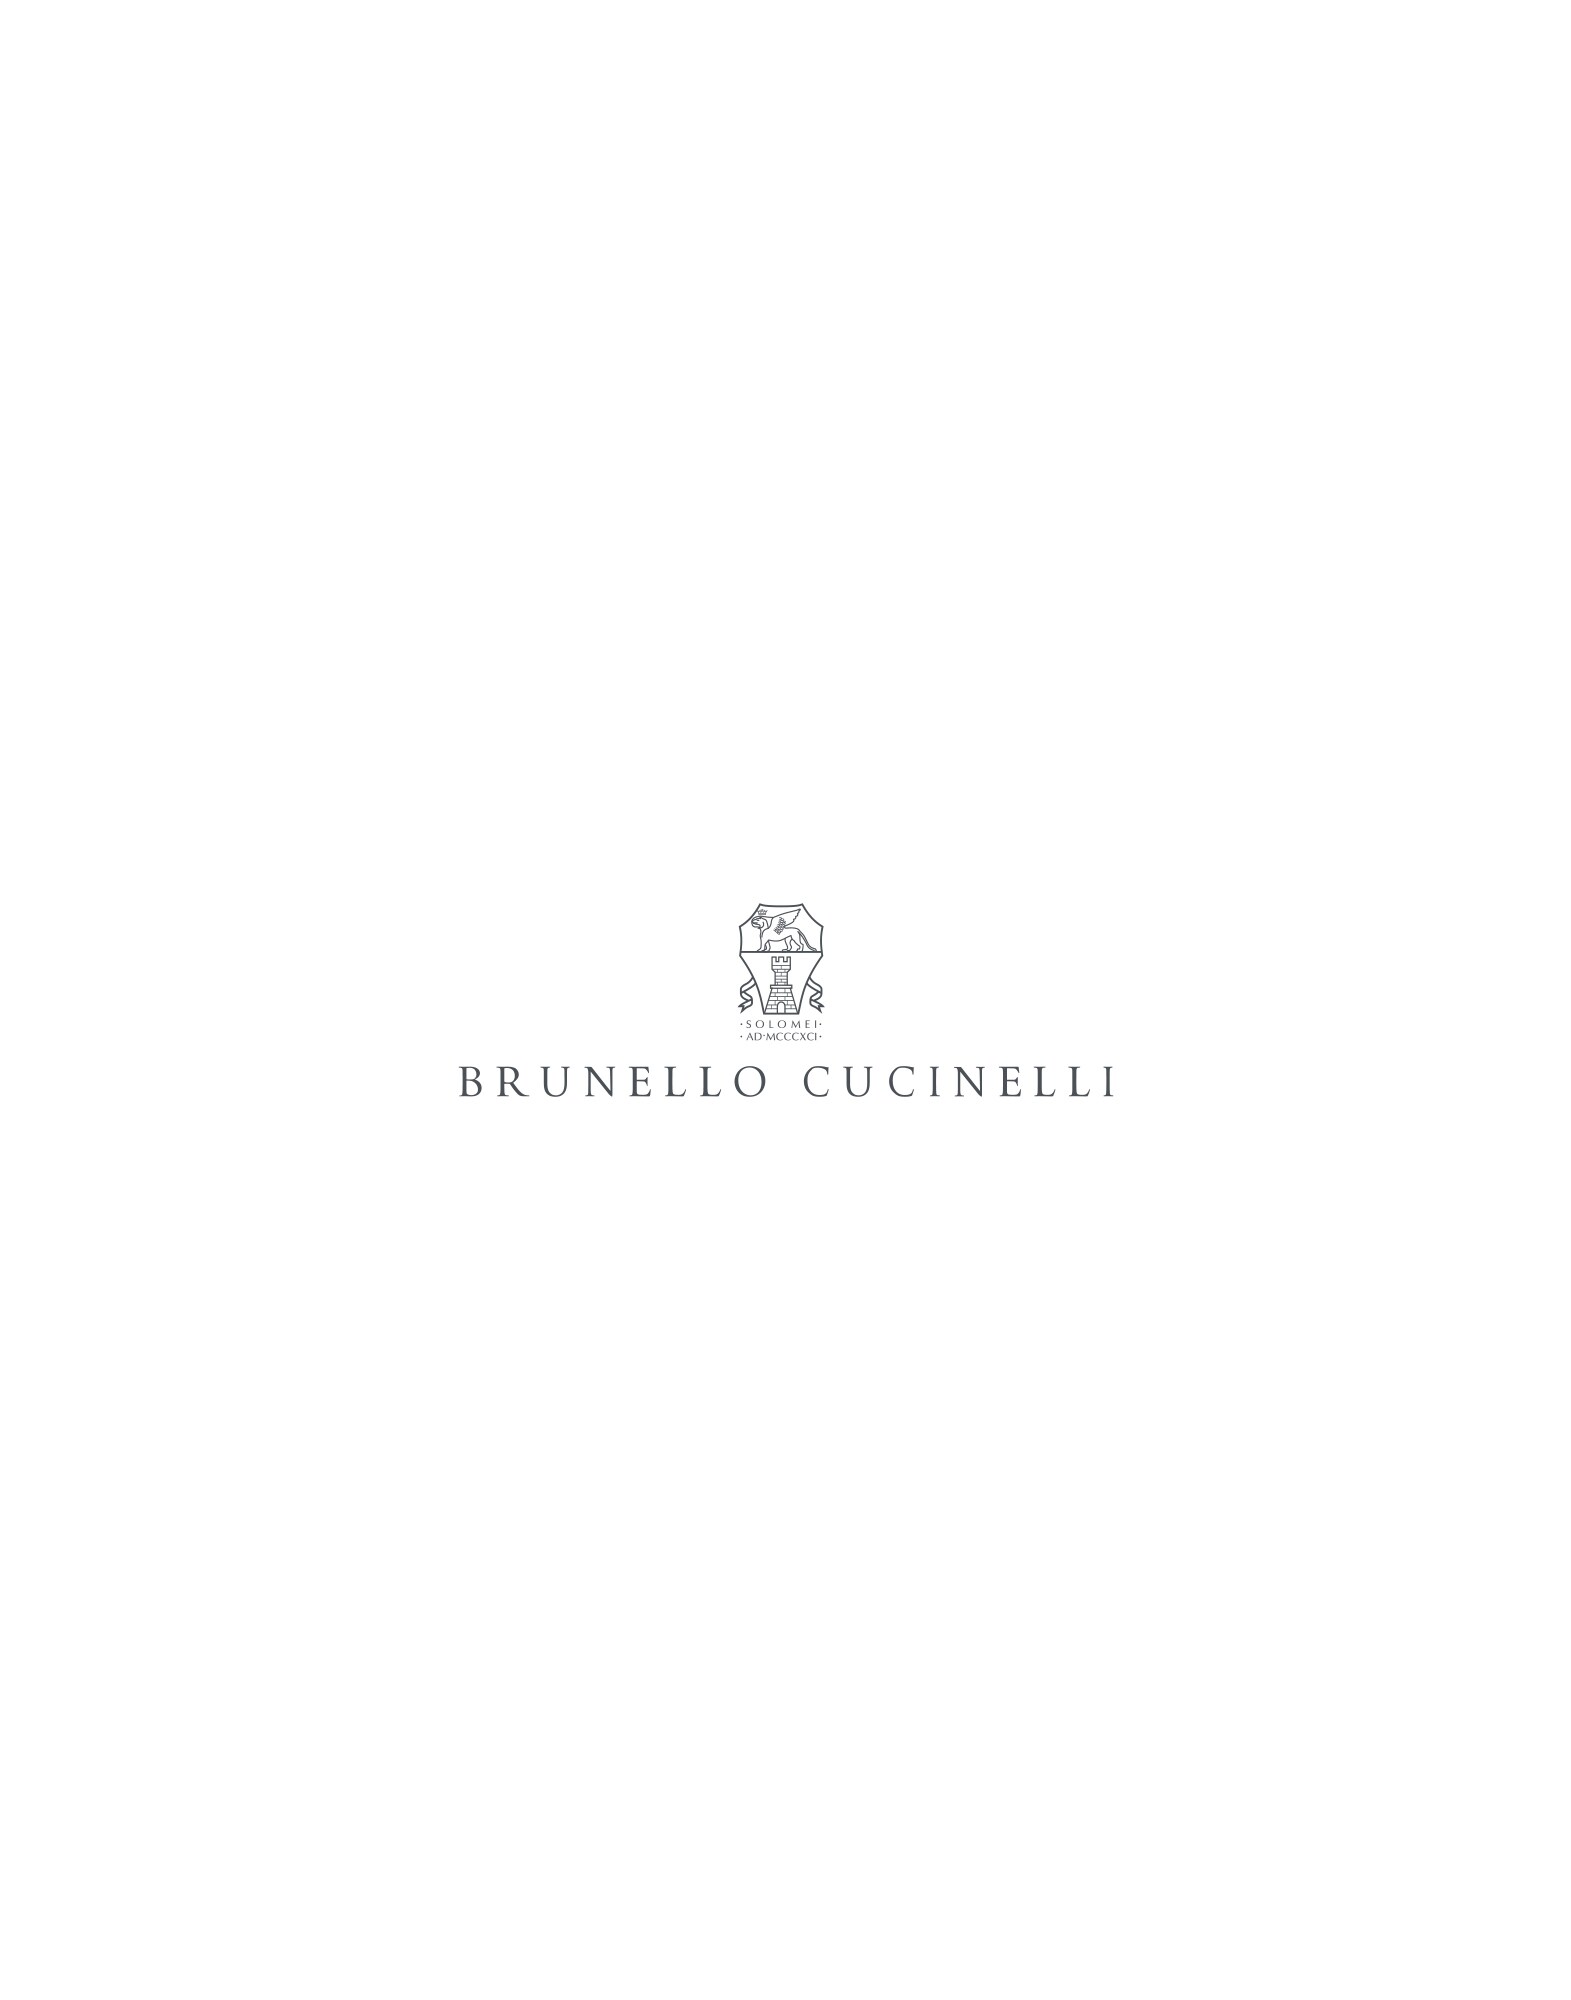 装饰镶珠的运动鞋
                            砂黄 女款 - Brunello Cucinelli
                        